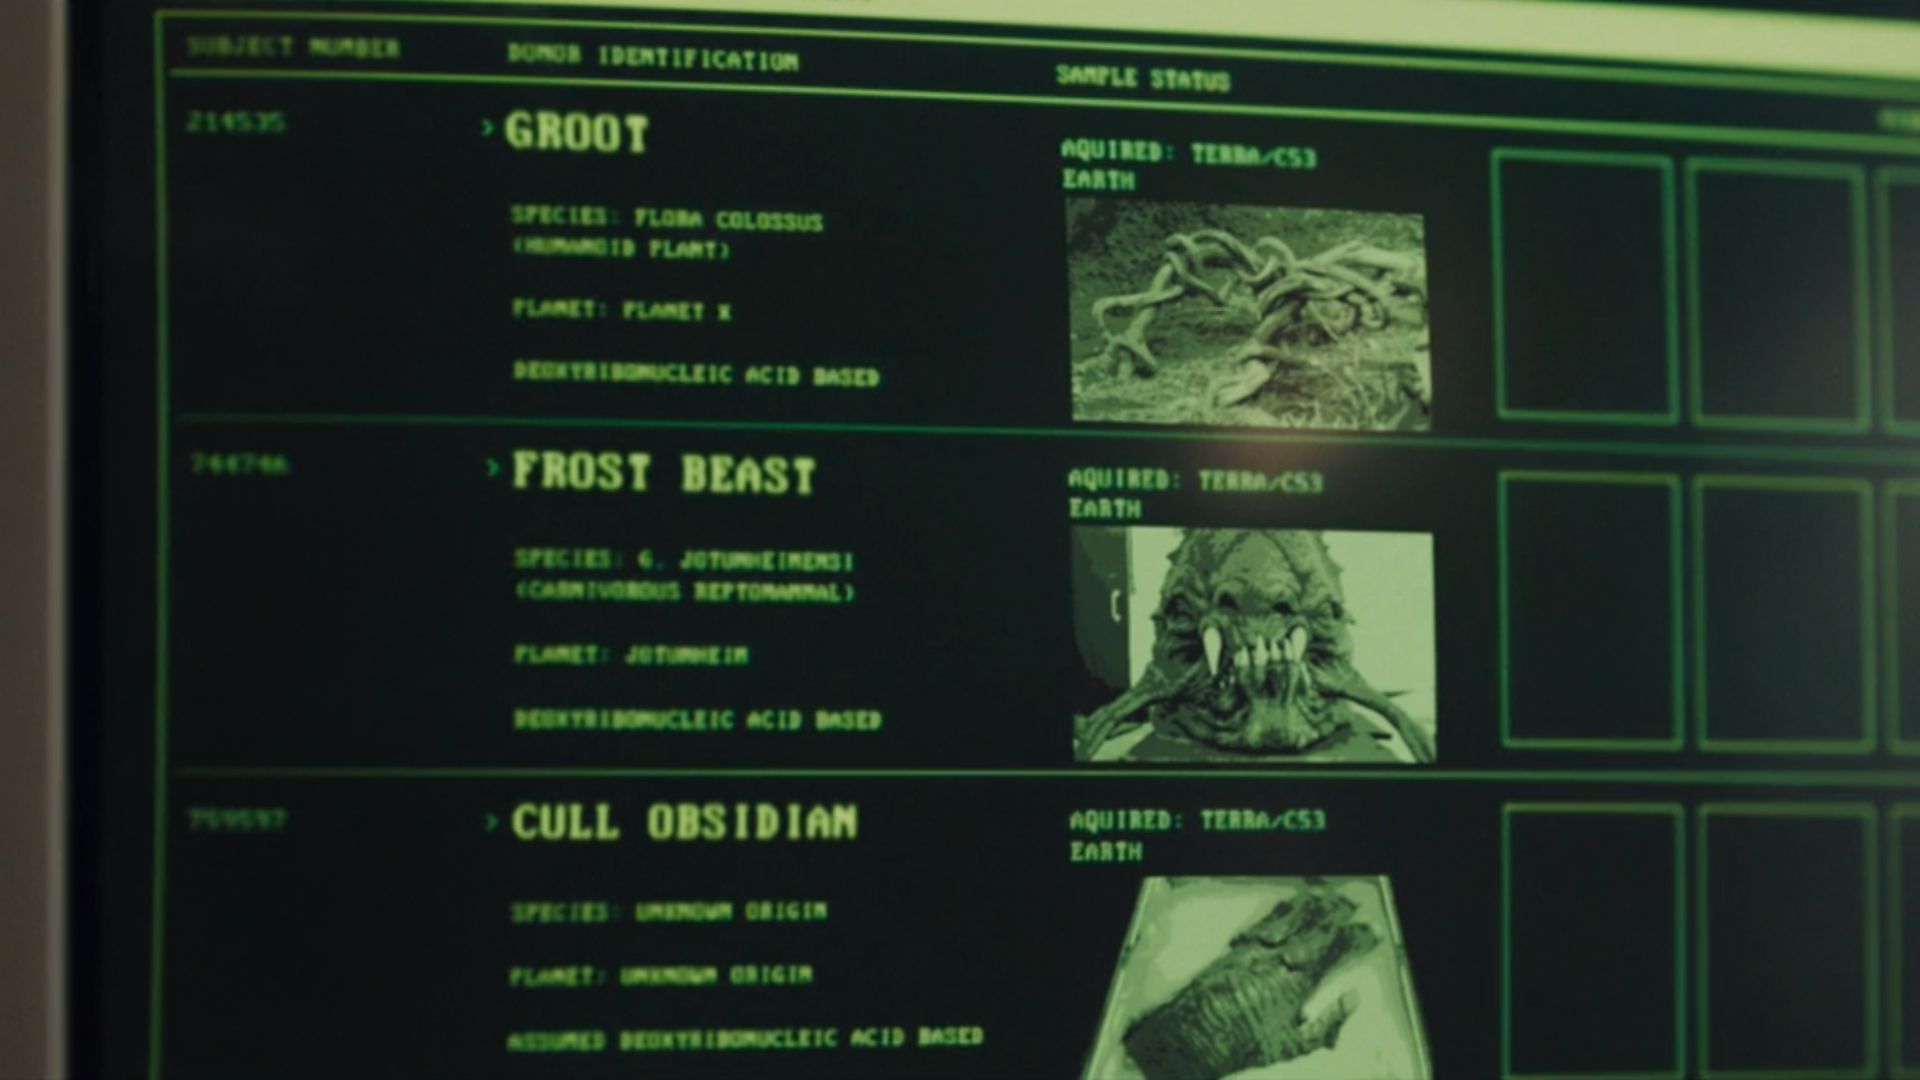 Super-Skrulls de "Invasão Secreta" serão formados a partir do DNA de figuras já conhecidas pelos fãs da Marvel, como o Groot, de "Guardiões da Galáxia" (Foto: Reprodução/Marvel Studios)